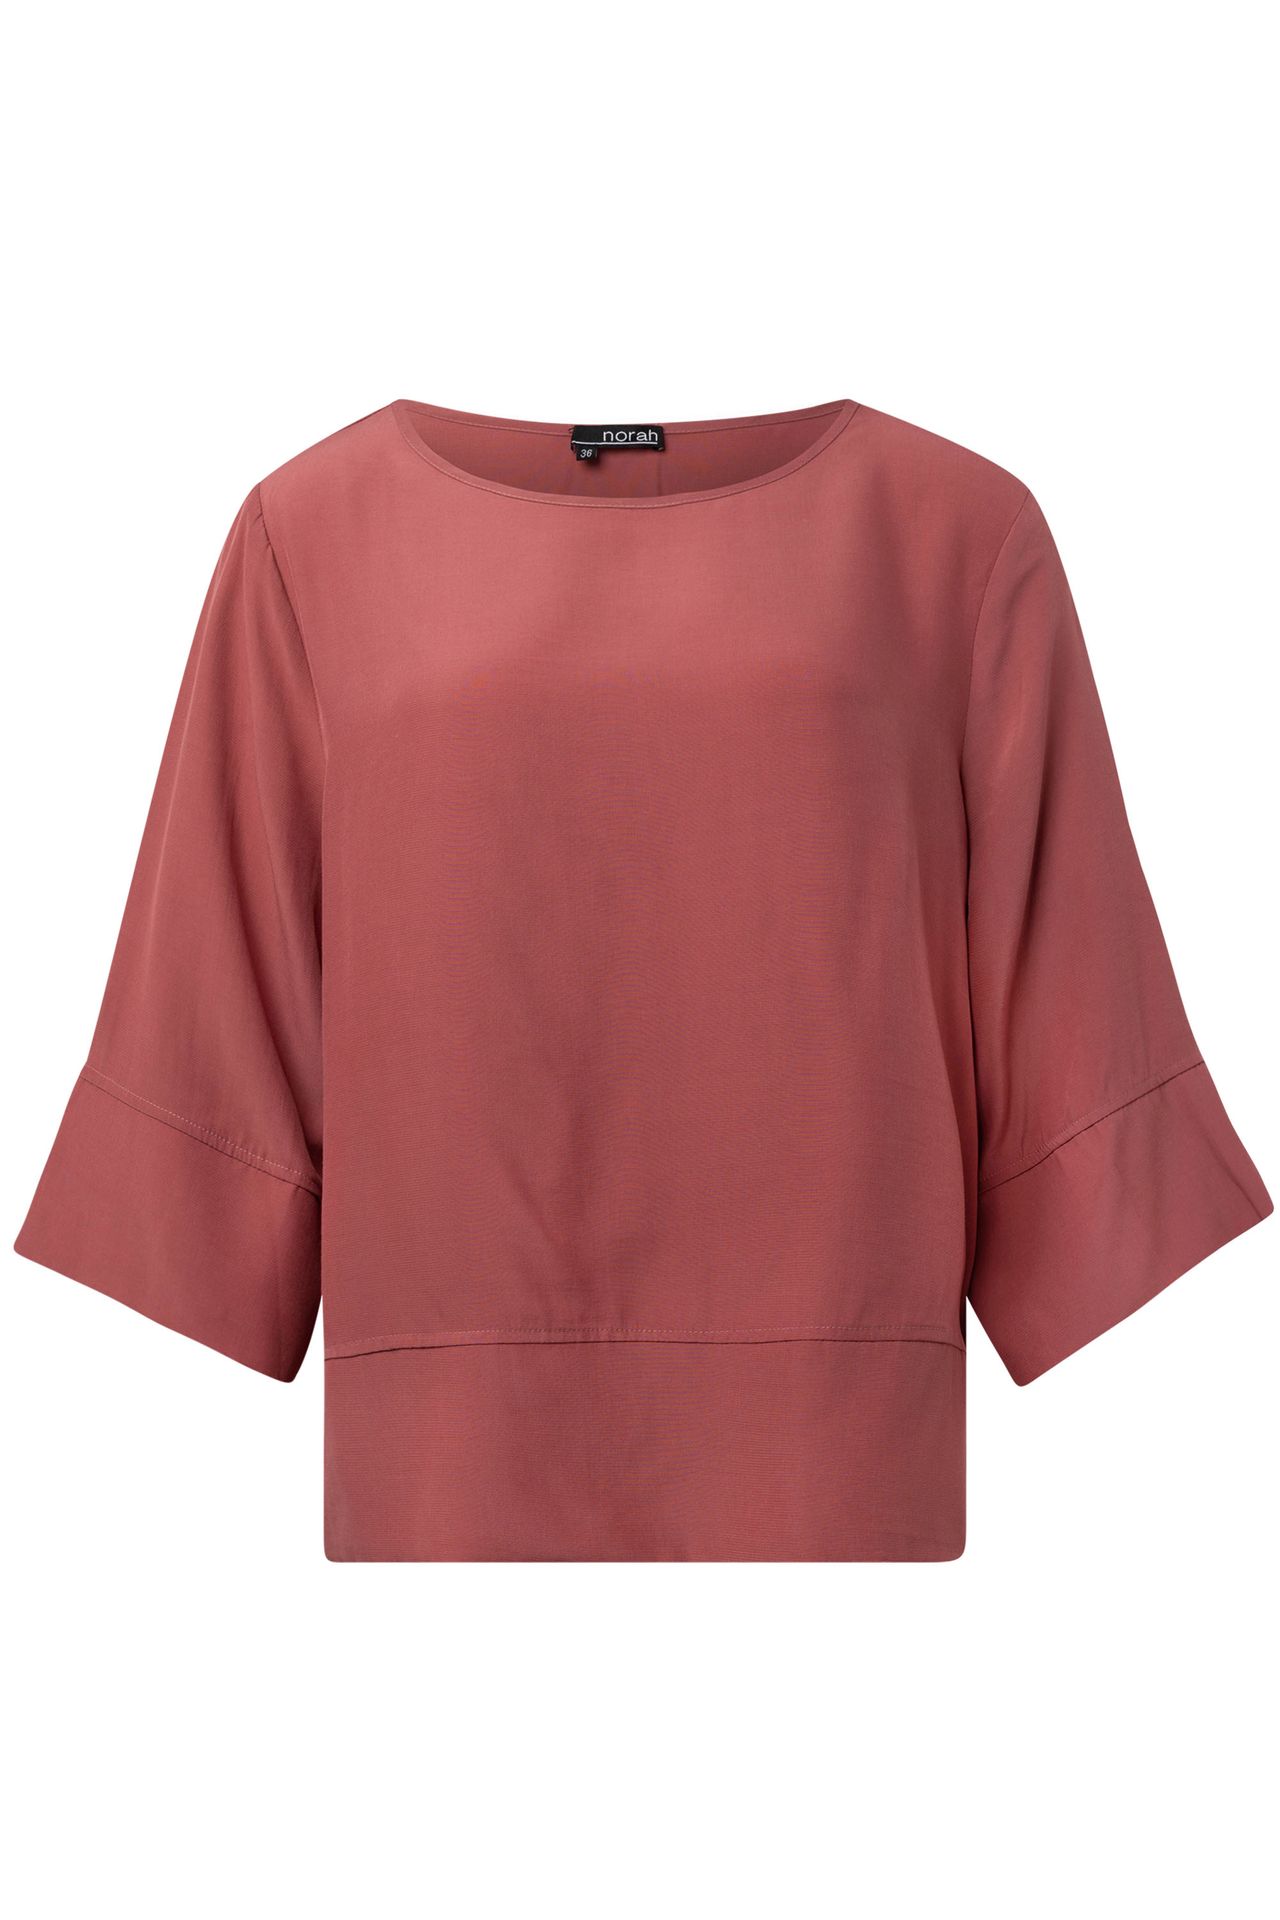 Norah Roze blouse blush 214574-905